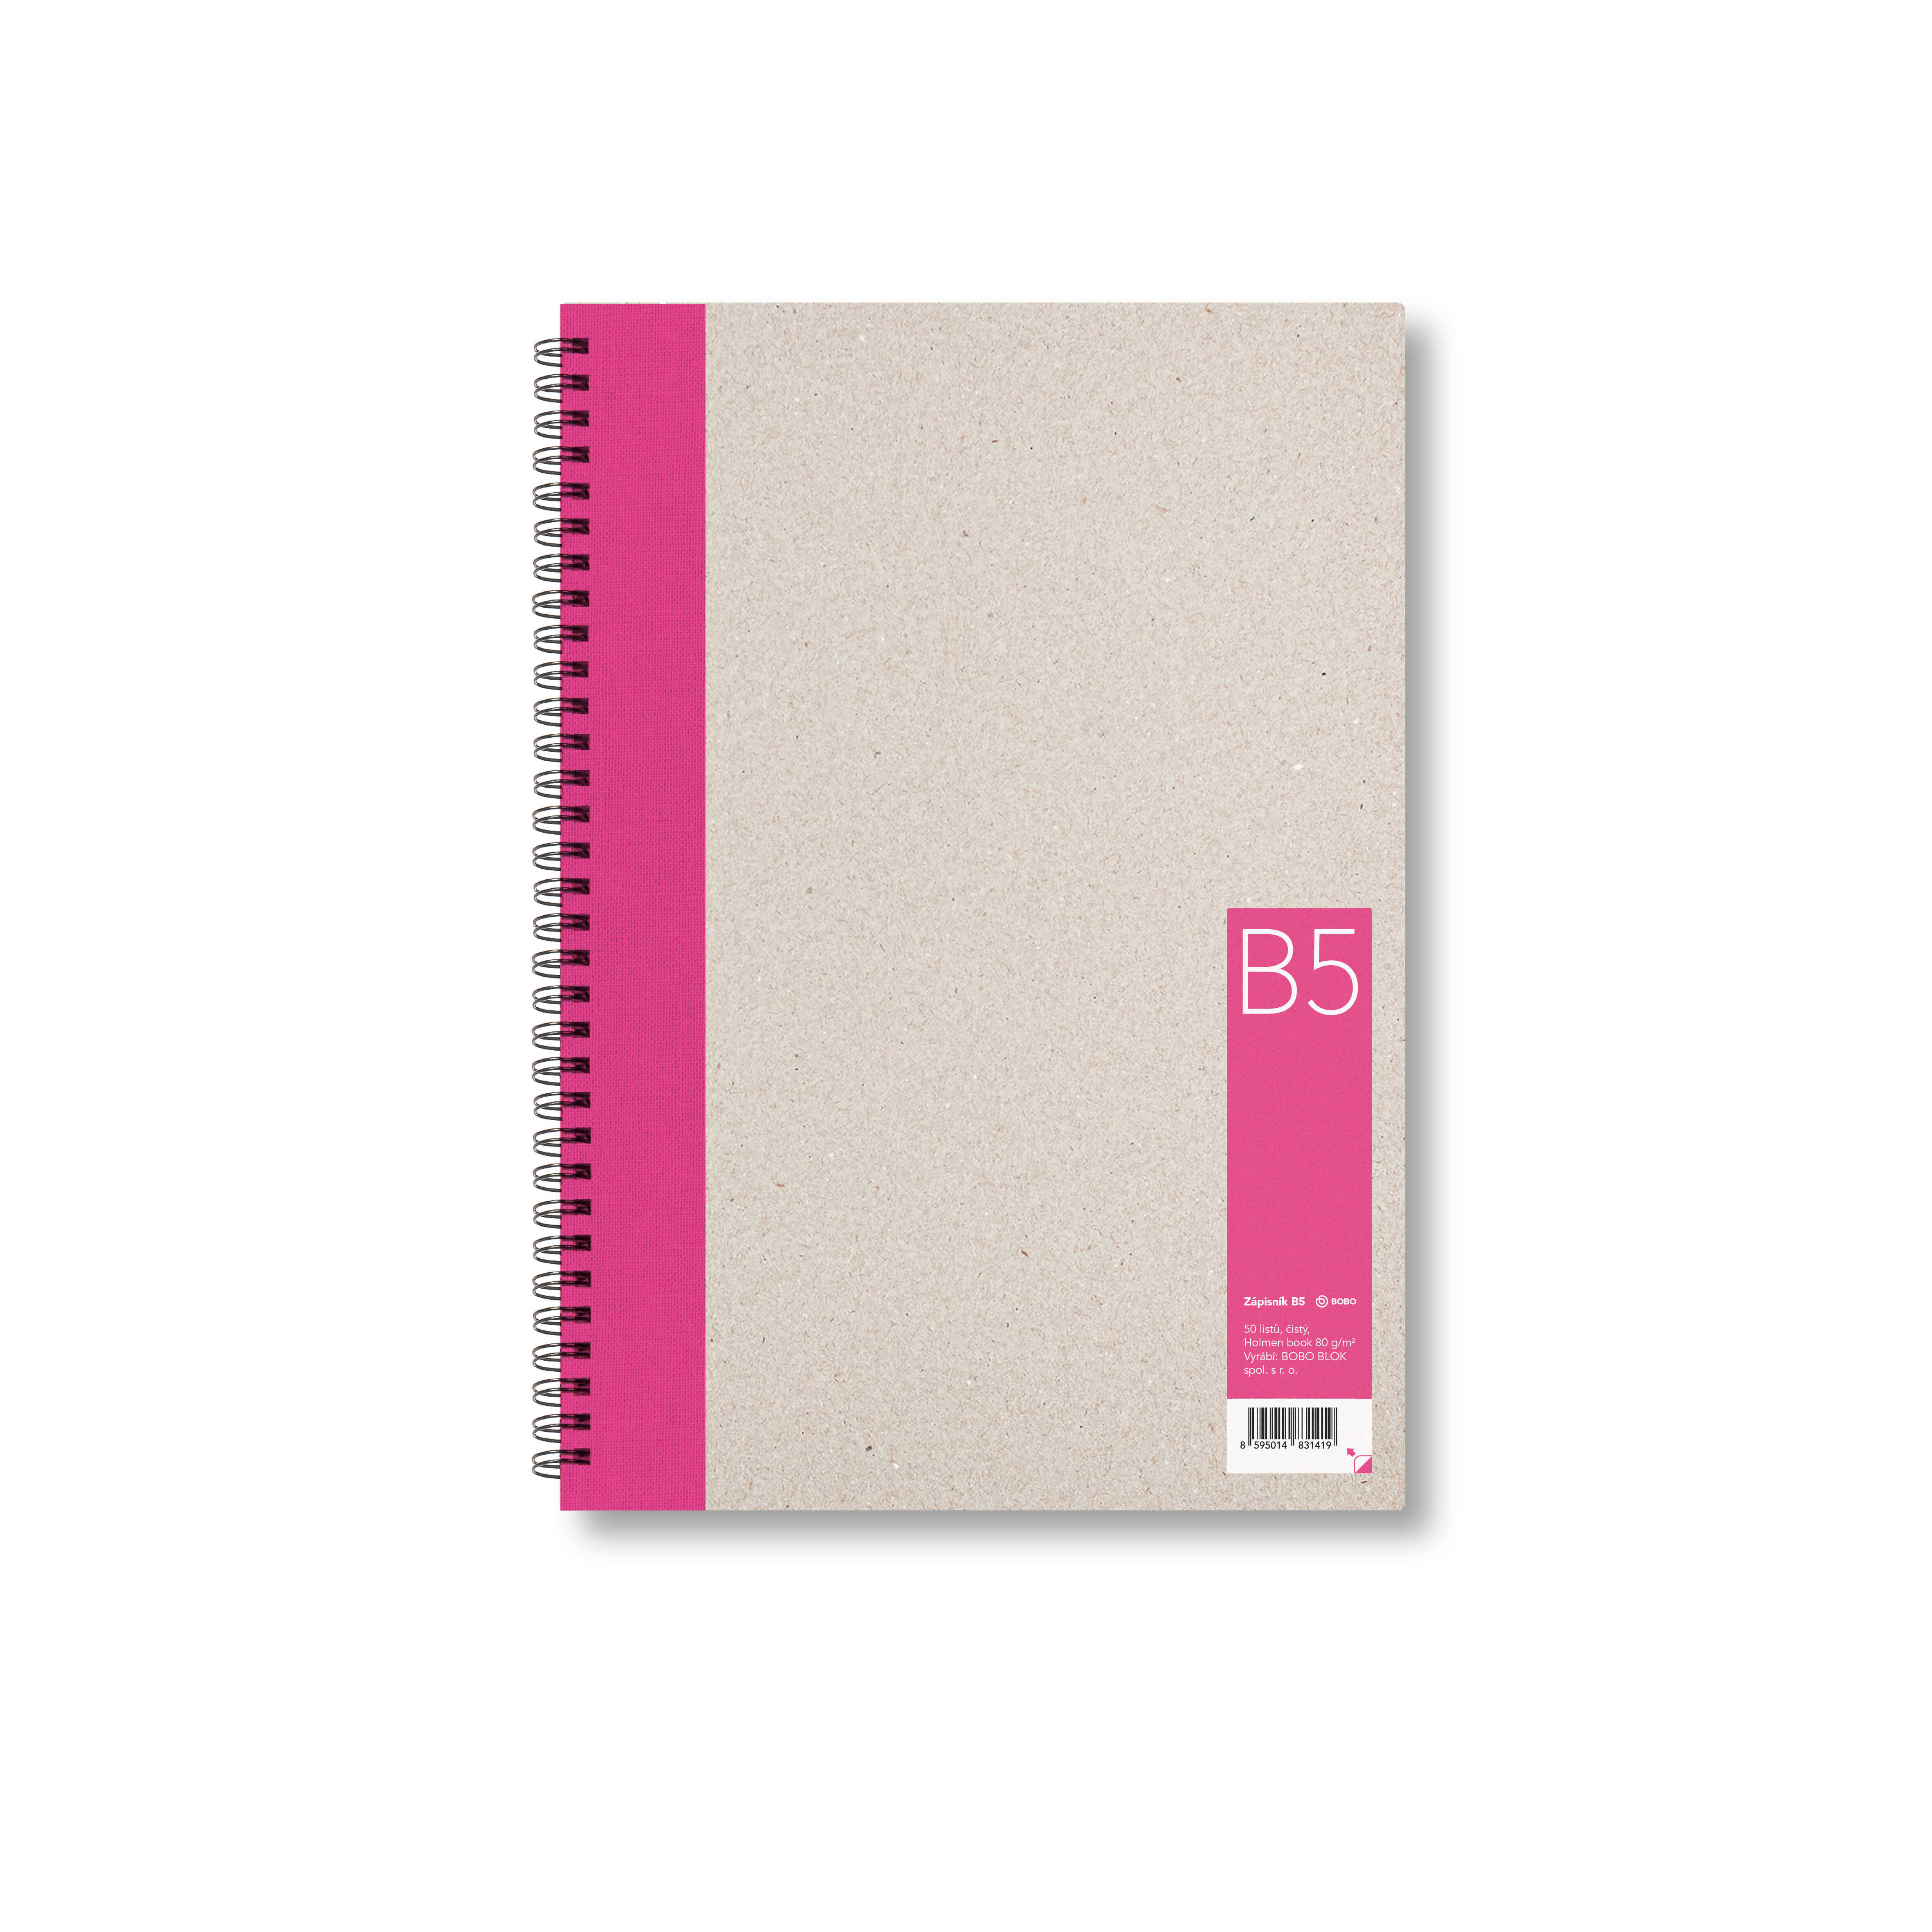 Zápisník Bobo B5, čistý, růžový